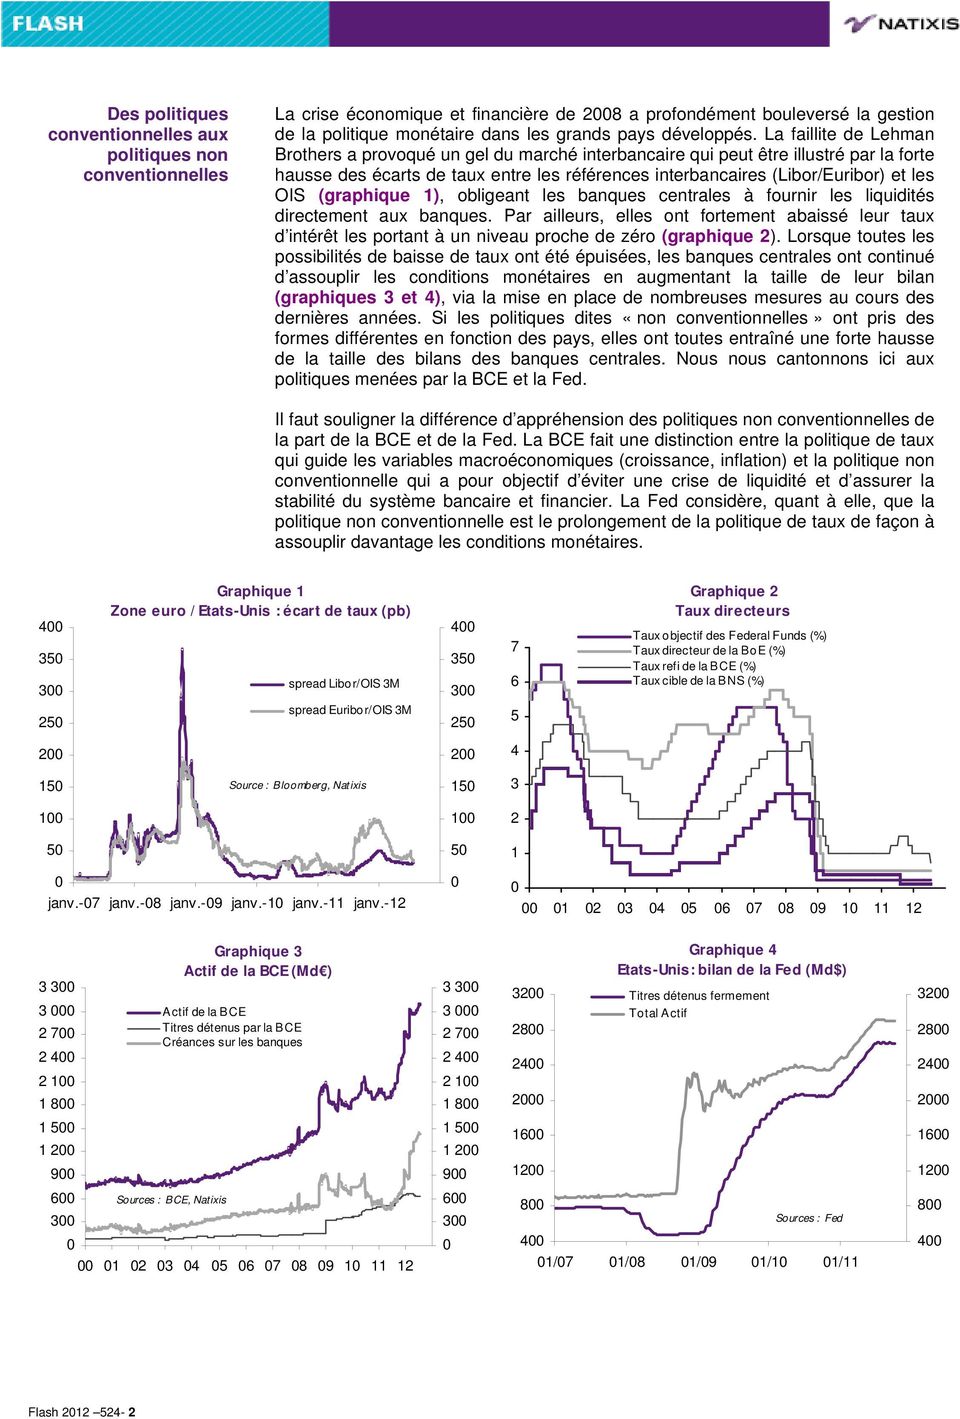 La faillite de Lehman Brothers a provoqué un gel du marché interbancaire qui peut être illustré par la forte hausse des écarts de taux entre les références interbancaires (Libor/Euribor) et les OIS